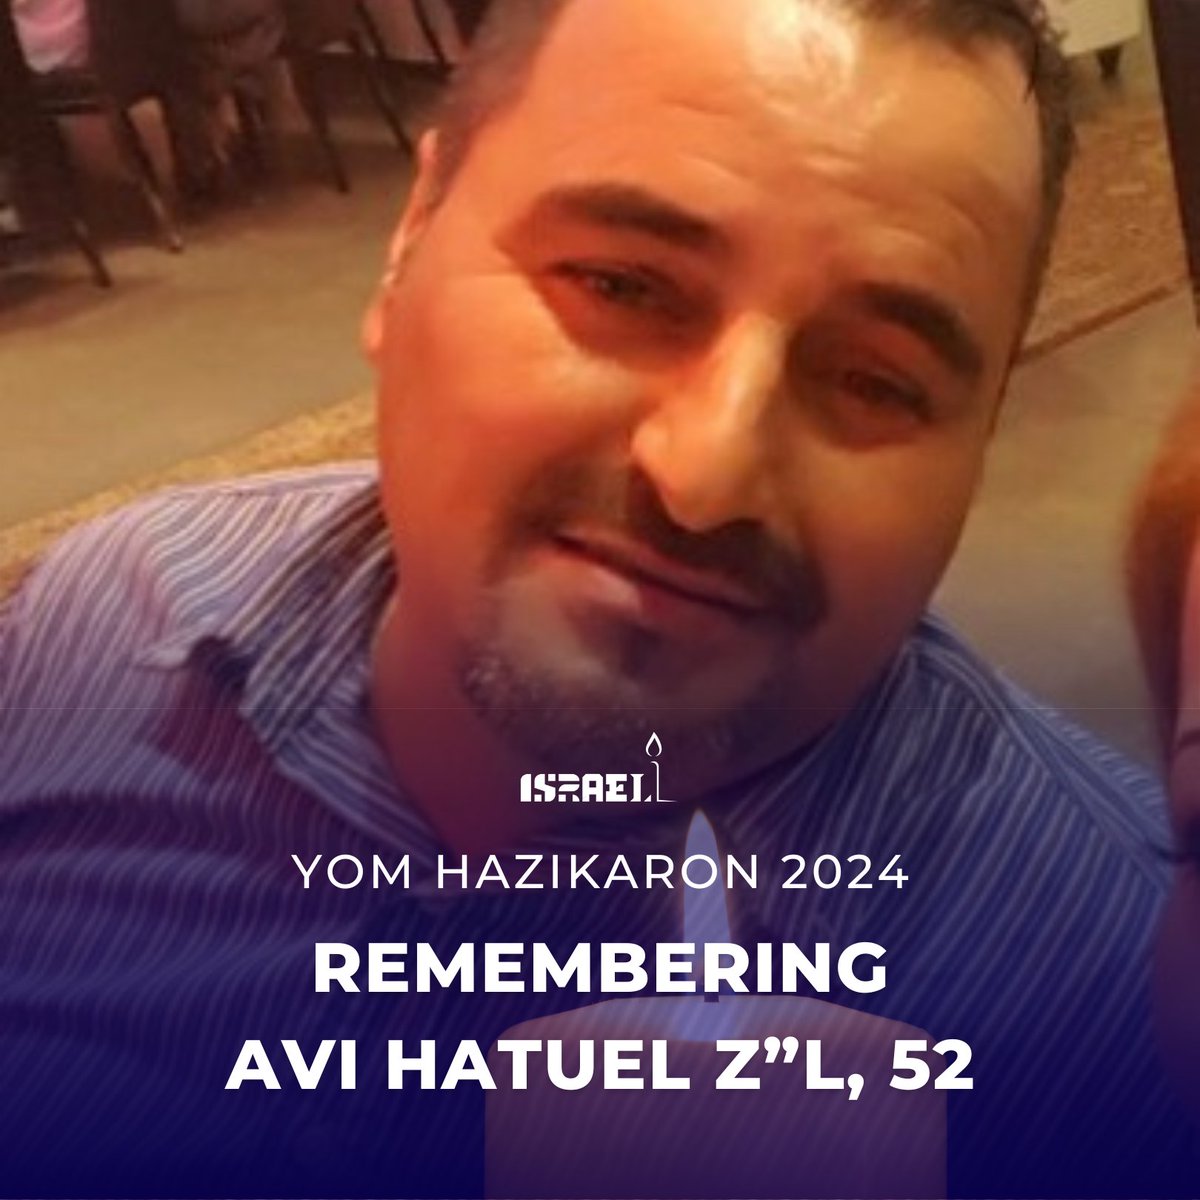 इस इज़राइली स्मृति दिवस पर, हम 52 वर्षीय एवी हतुएल को याद करते हैं। जब उनके परिवार ने अपने घर के बाहर गोलियों की आवाज़ सुनी, तो अवि ने अपने परिवार को शेल्टर में छिपाकर रखा। वह बाहर निकले और आतंकवादियों ने उनकी हत्या कर दी, जिन्हें लगा कि वह घर पर अकेले है। उन्होंने अपने परिवार…